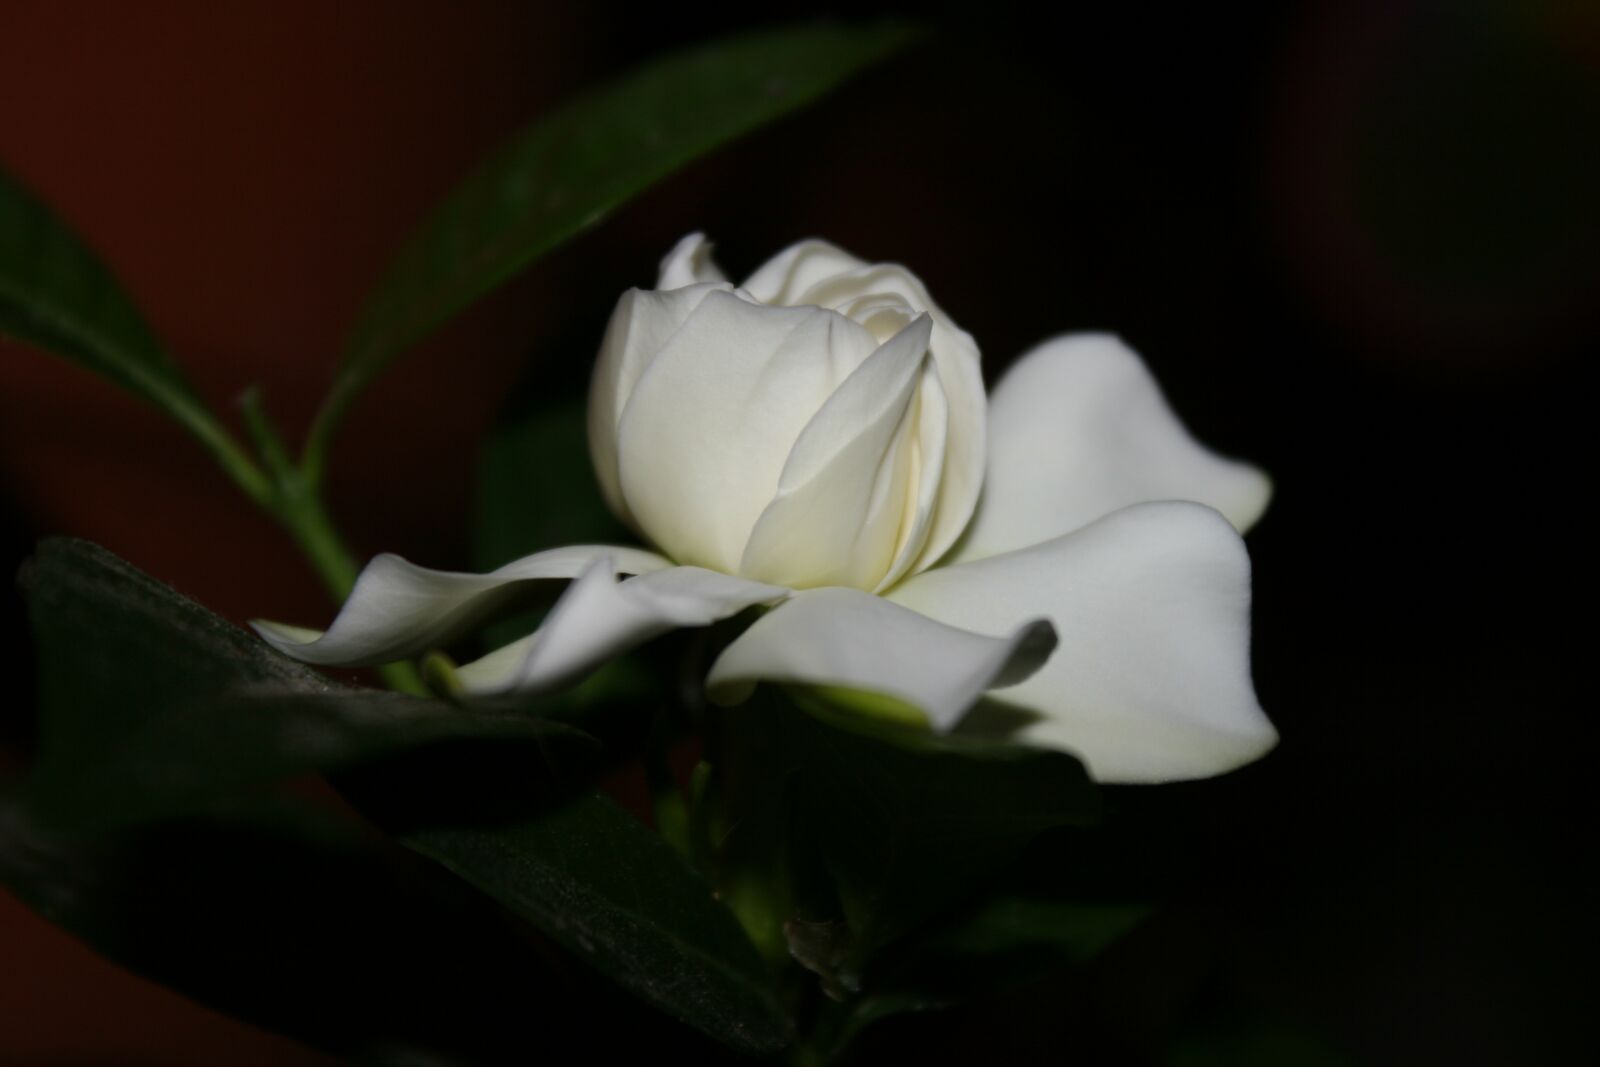 Canon EOS 30D sample photo. Flower, cape jasmine, gardenia photography